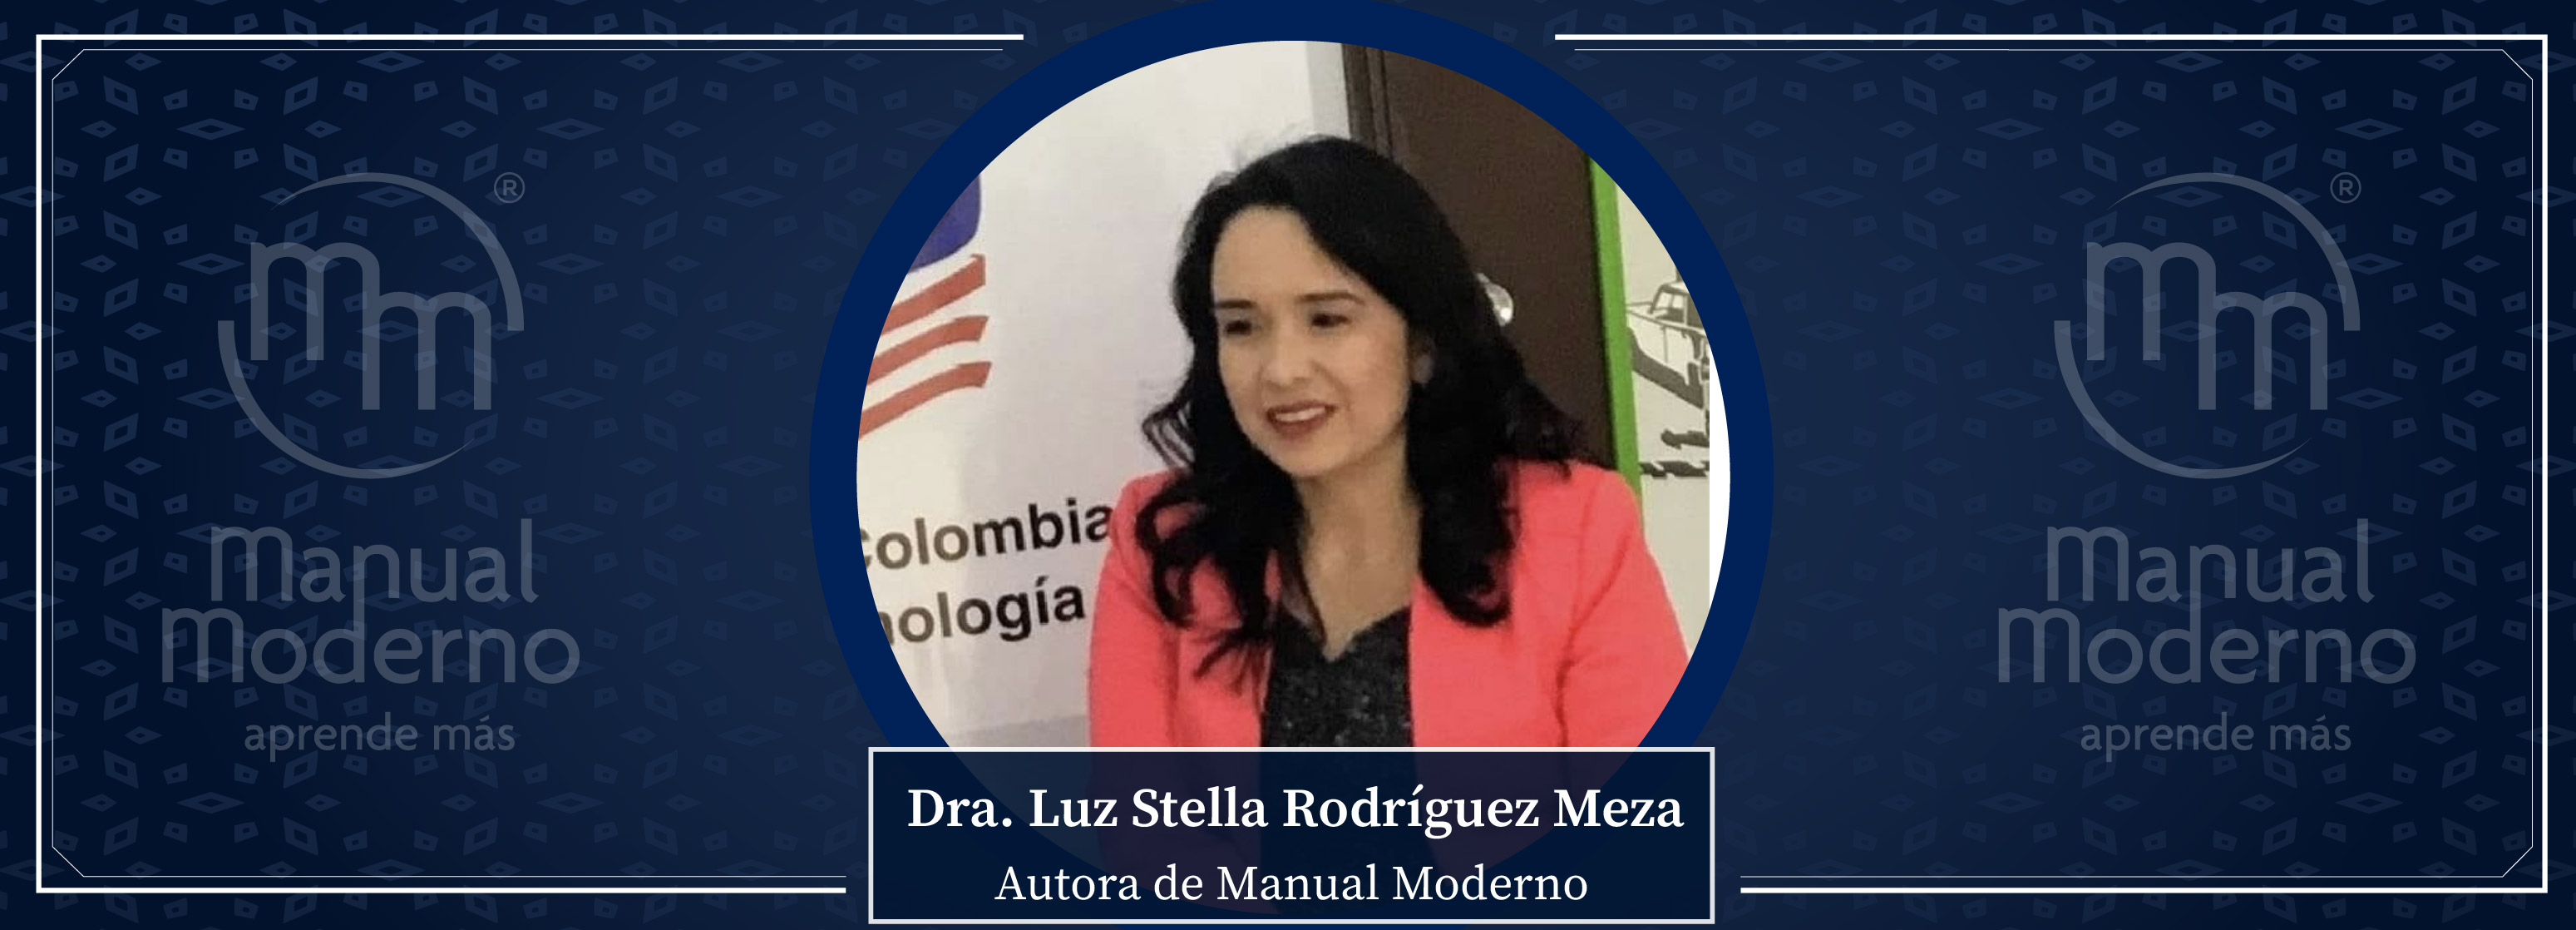 Nuestros Autores. Dra. Luz Stella Rodríguez Meza